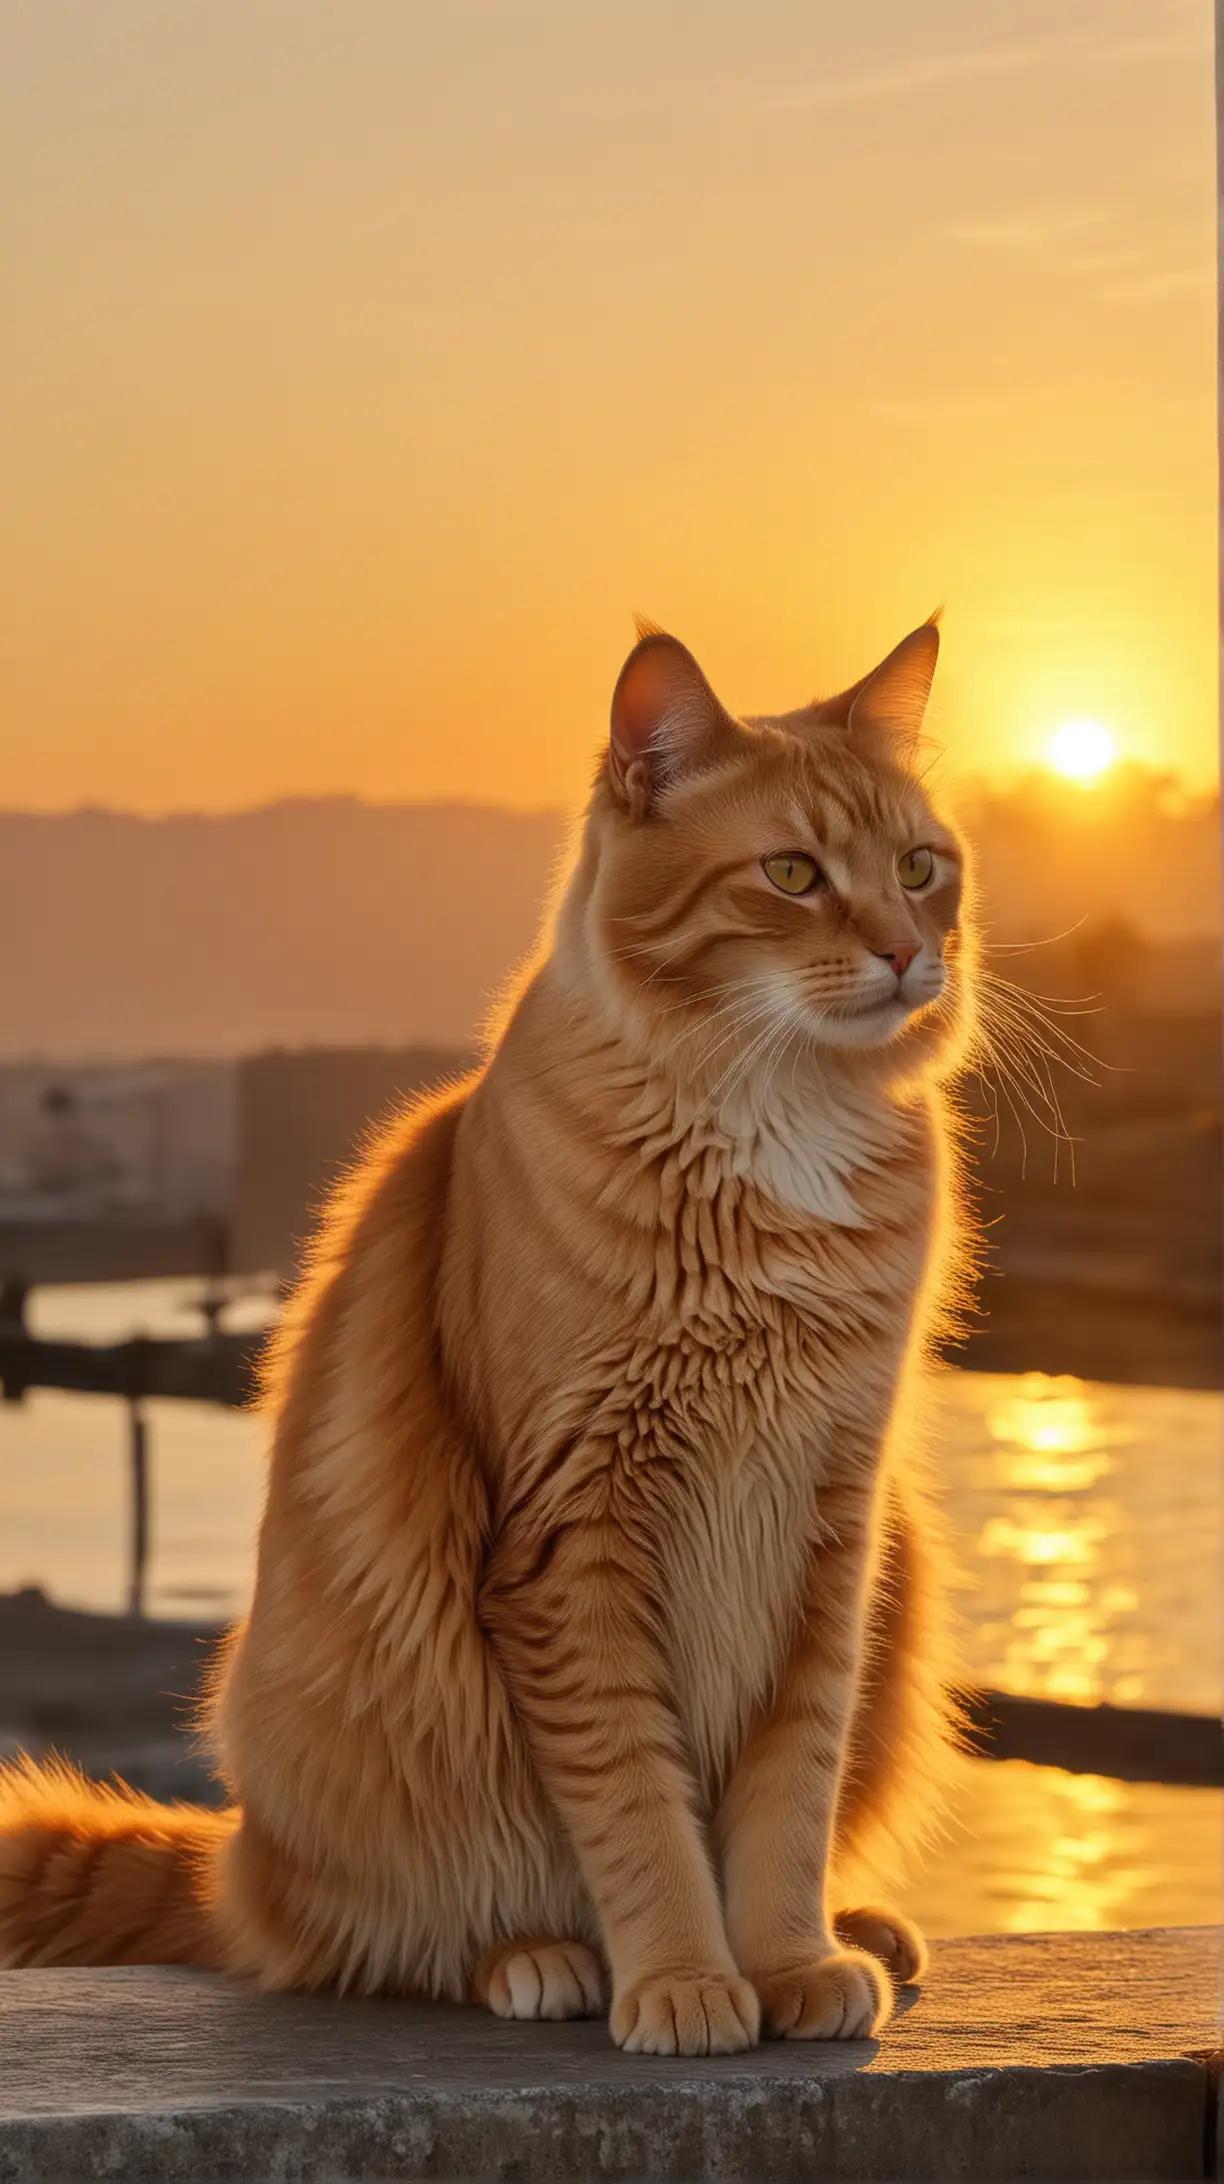 1. Утро: кошка в золотом сиянии (картинка: кошка на фоне рассвета).